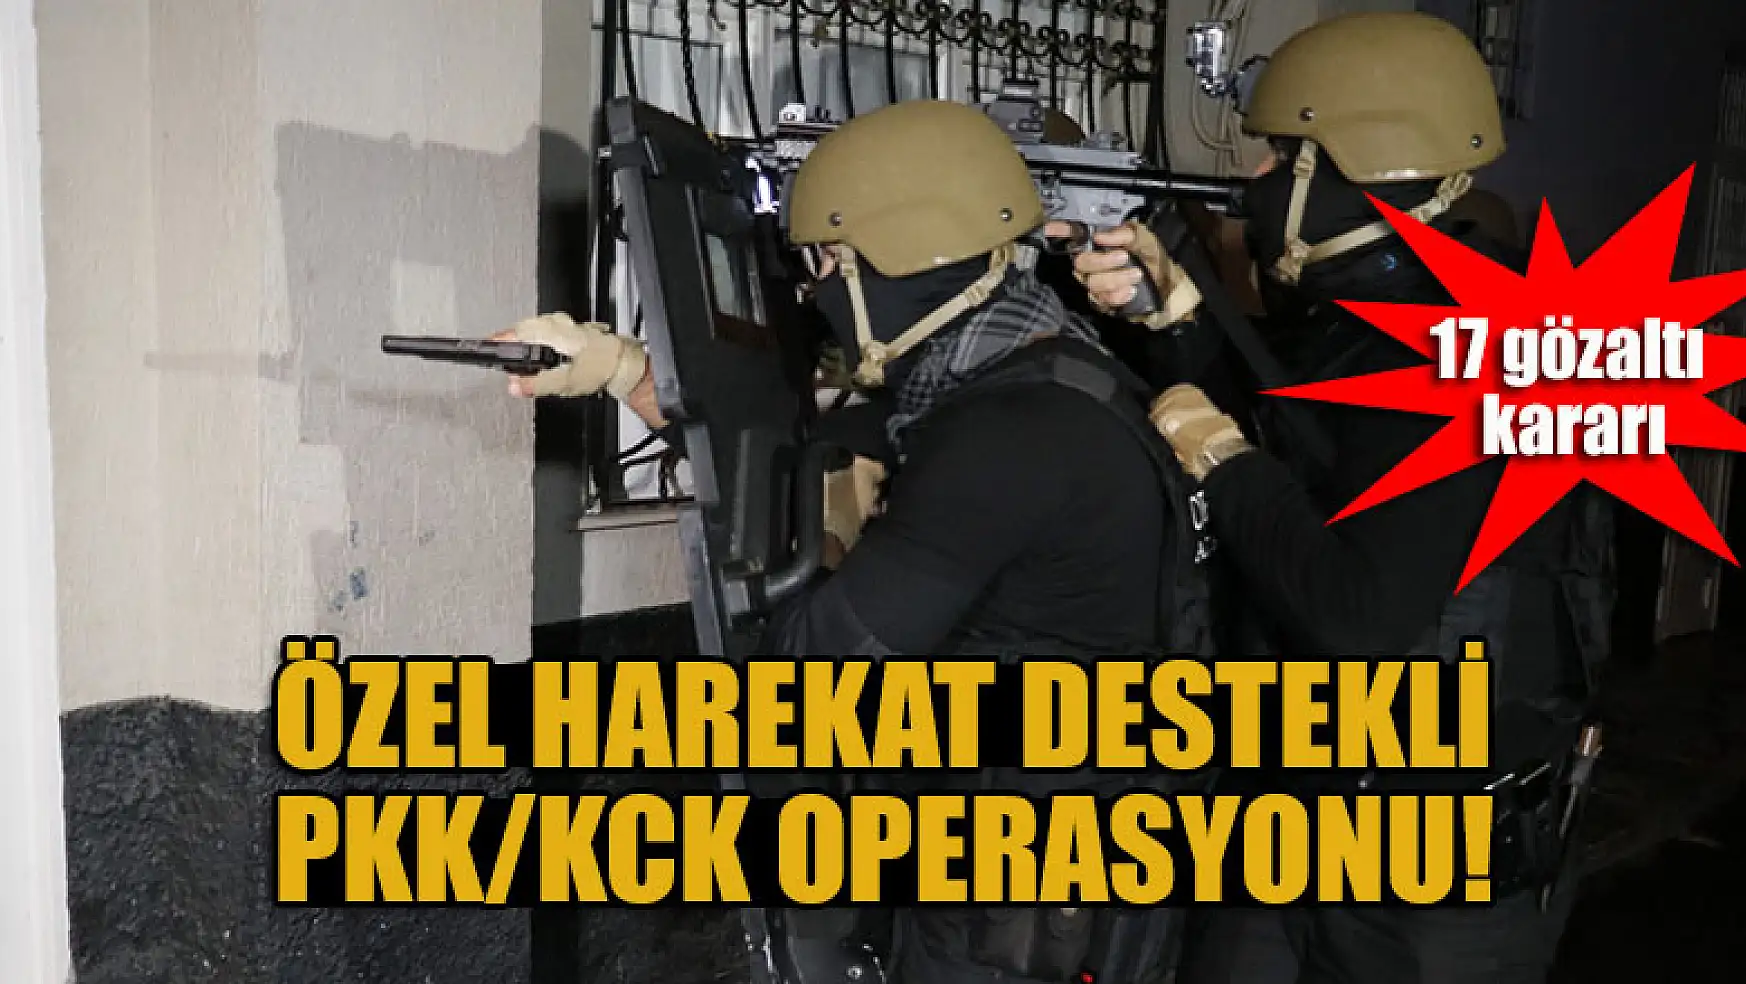 Özel harekat destekli PKK/KCK operasyonu: 17 gözaltı kararı